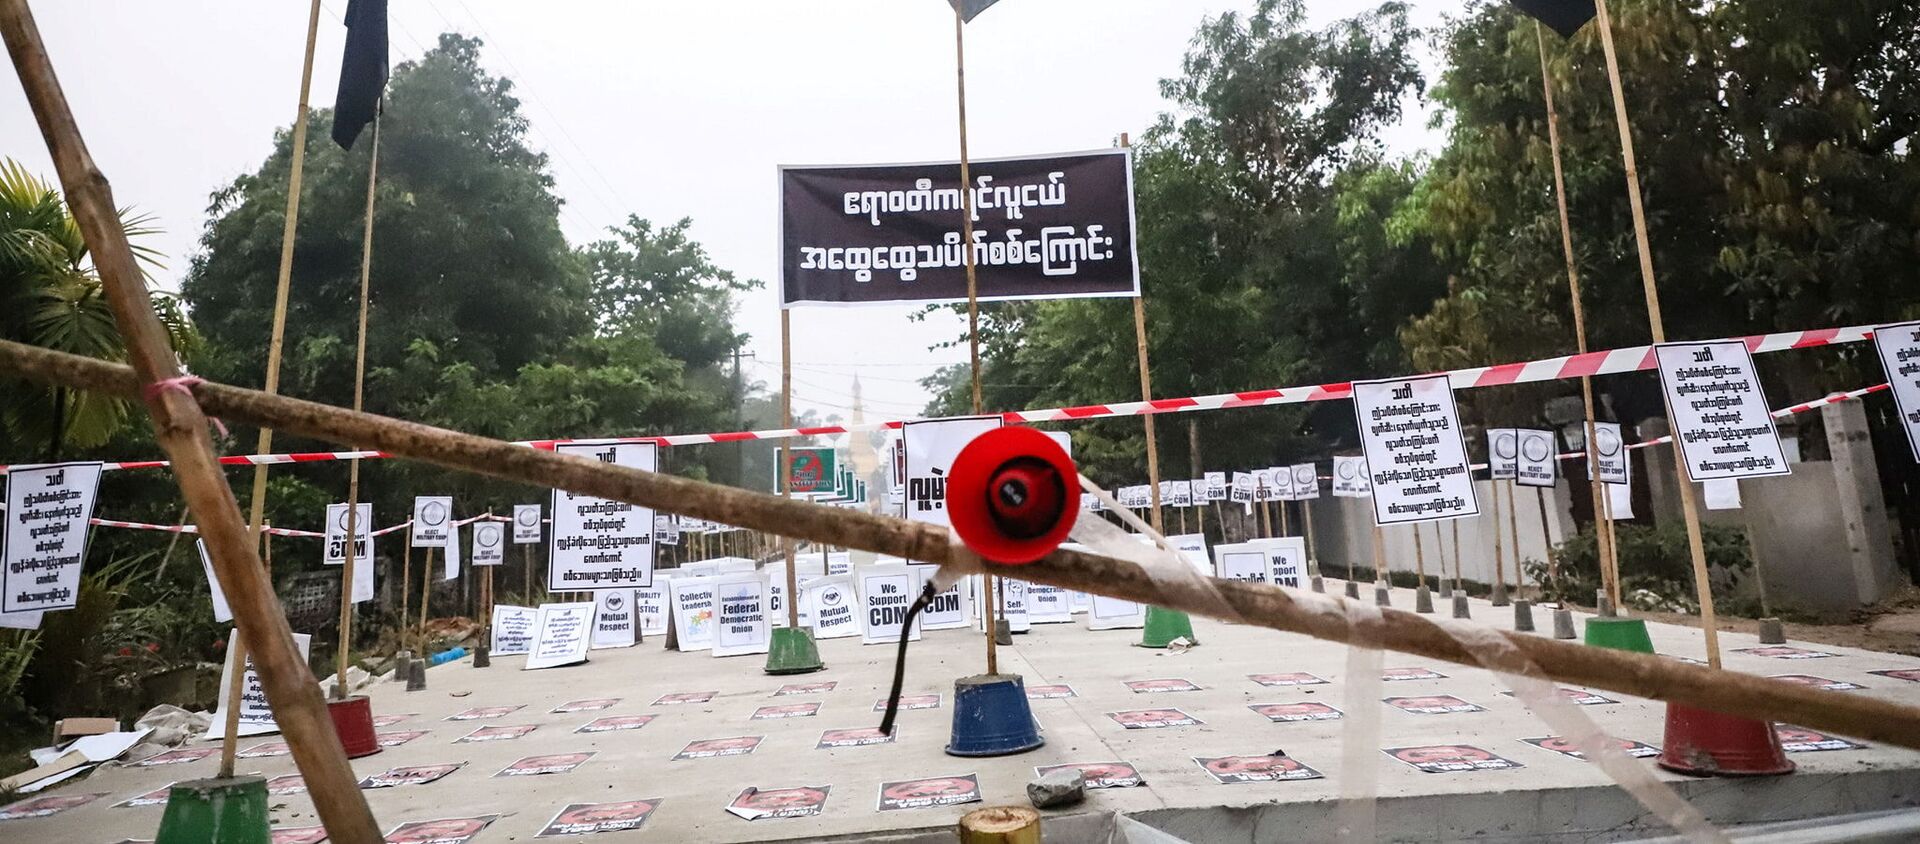 Quang cảnh loa và biển báo trong cuộc biểu tình không có người biểu tình ở Nyaungdon, Ayeyarwady, Myanmar - Sputnik Việt Nam, 1920, 13.05.2021